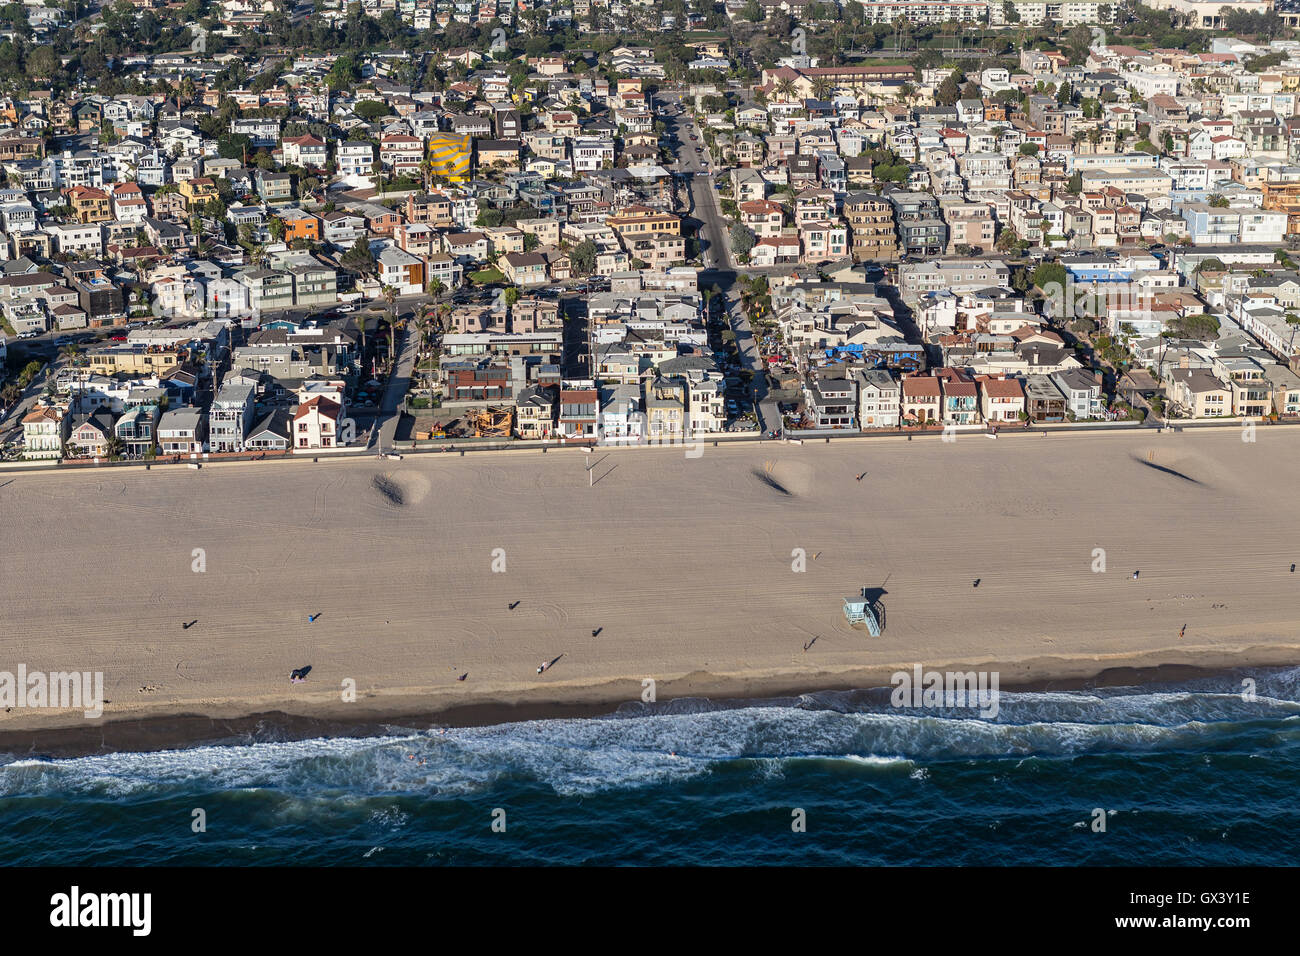 Am Nachmittag Luftbild von Hermosa Beach Ocean front Wohnviertel in Südkalifornien. Stockfoto